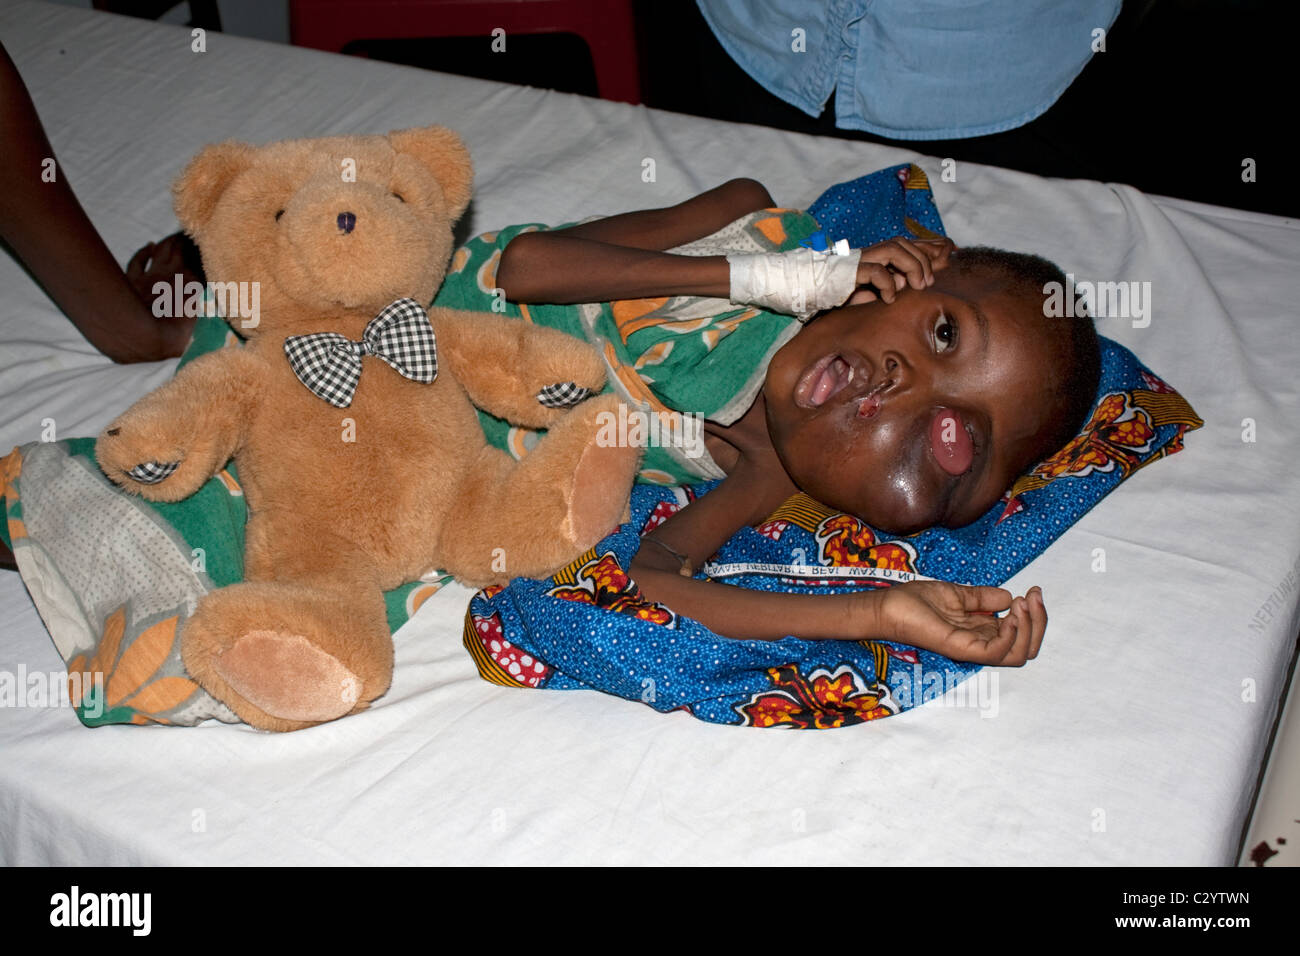 Jeune garçon africain avec de graves symptômes de cancer de l'hôpital Burkitts côte de Mombasa au Kenya Banque D'Images